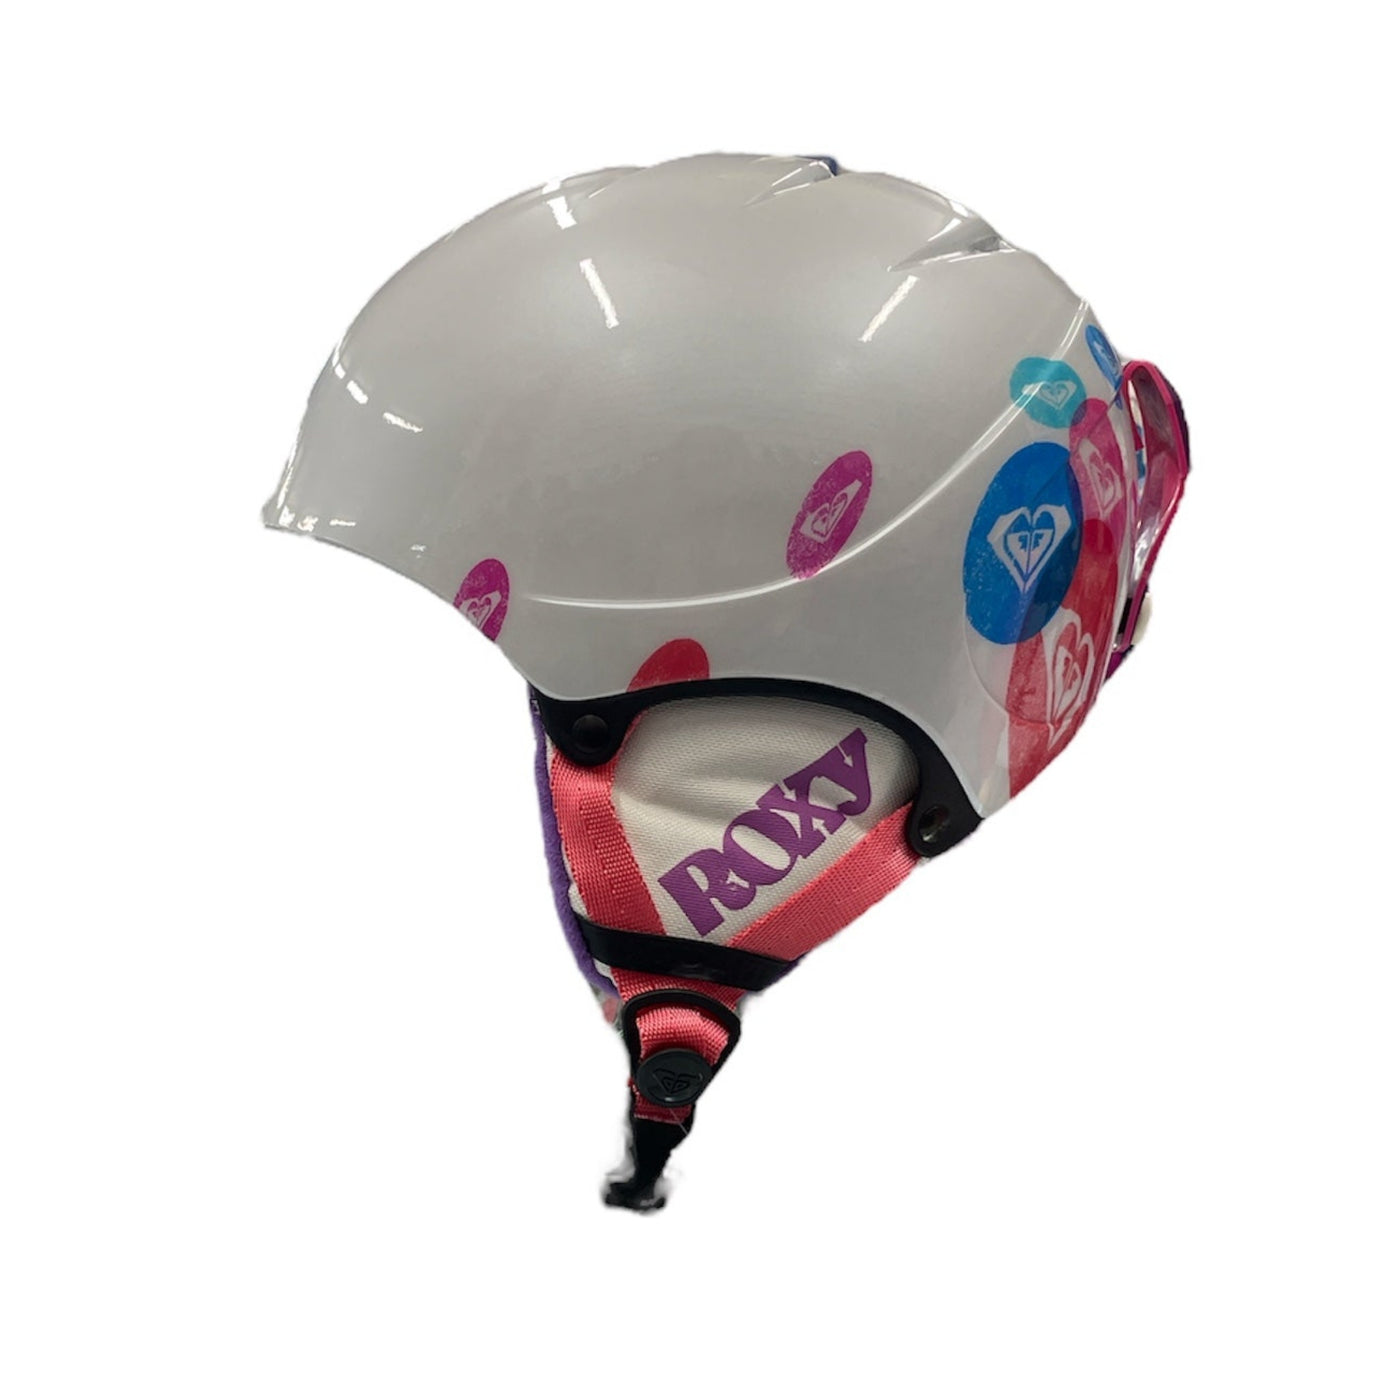 Roxy Misty Girls Snow Helmet